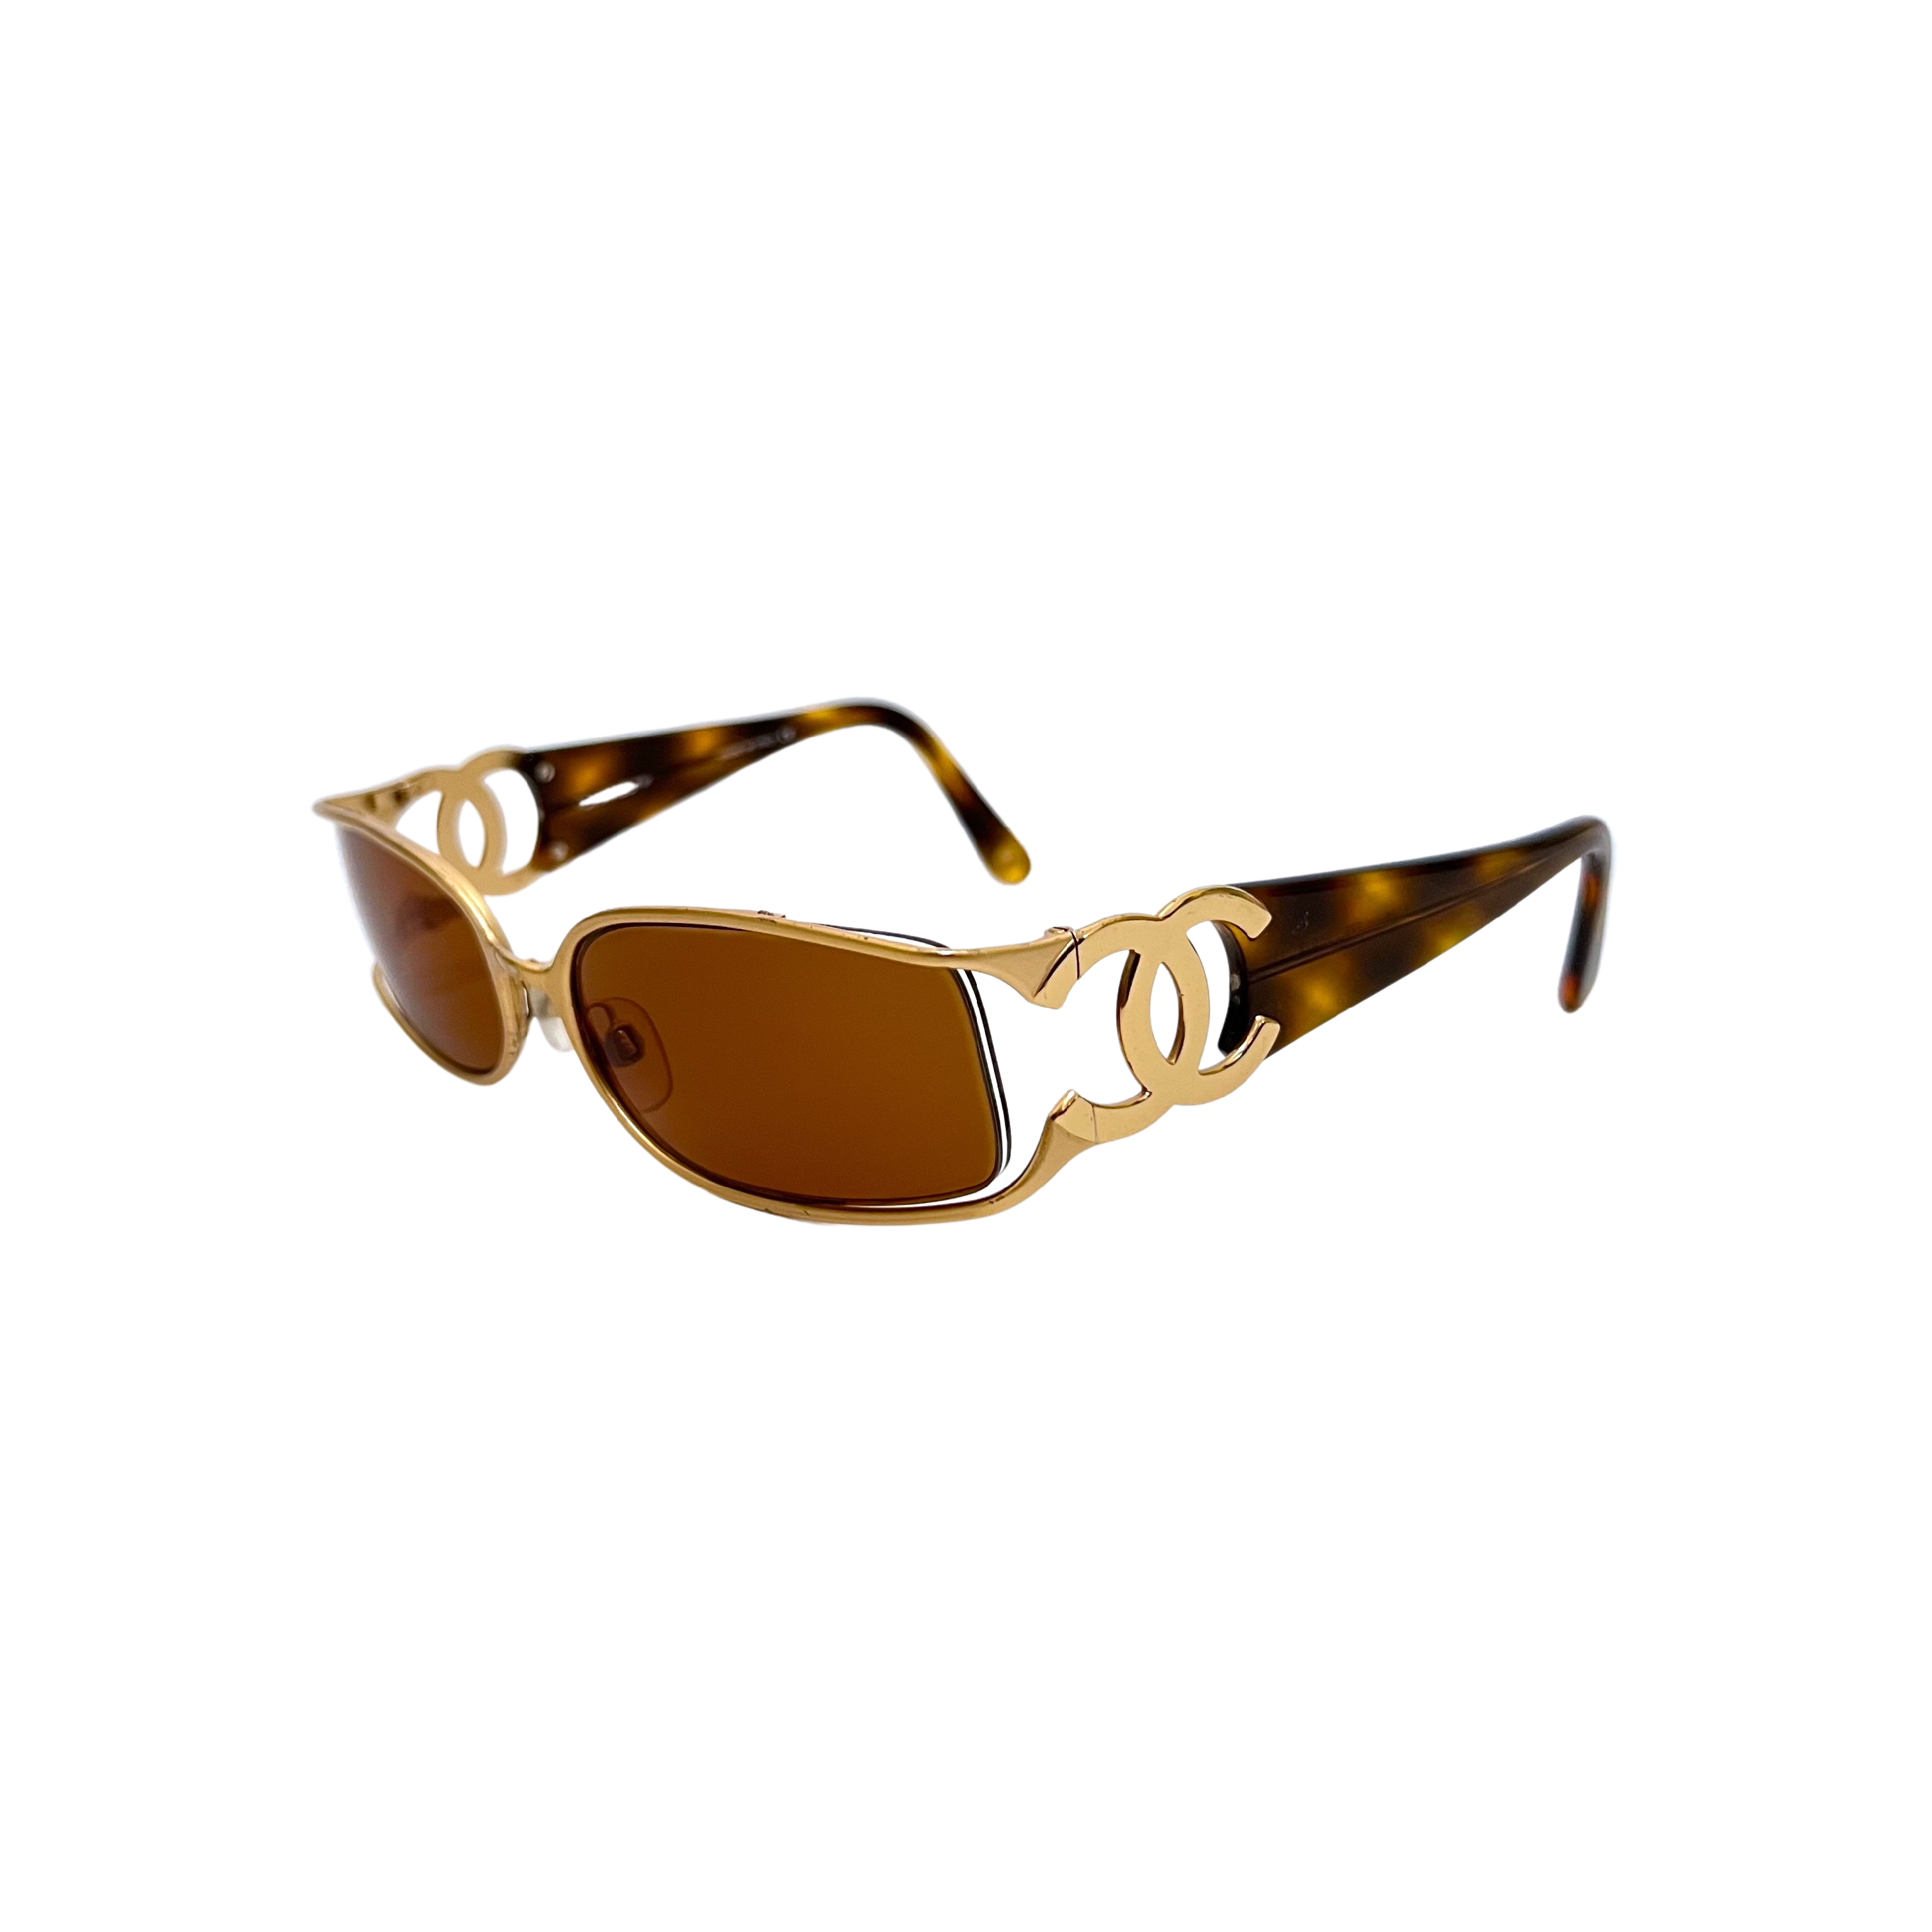 cc chanel sunglasses vintage